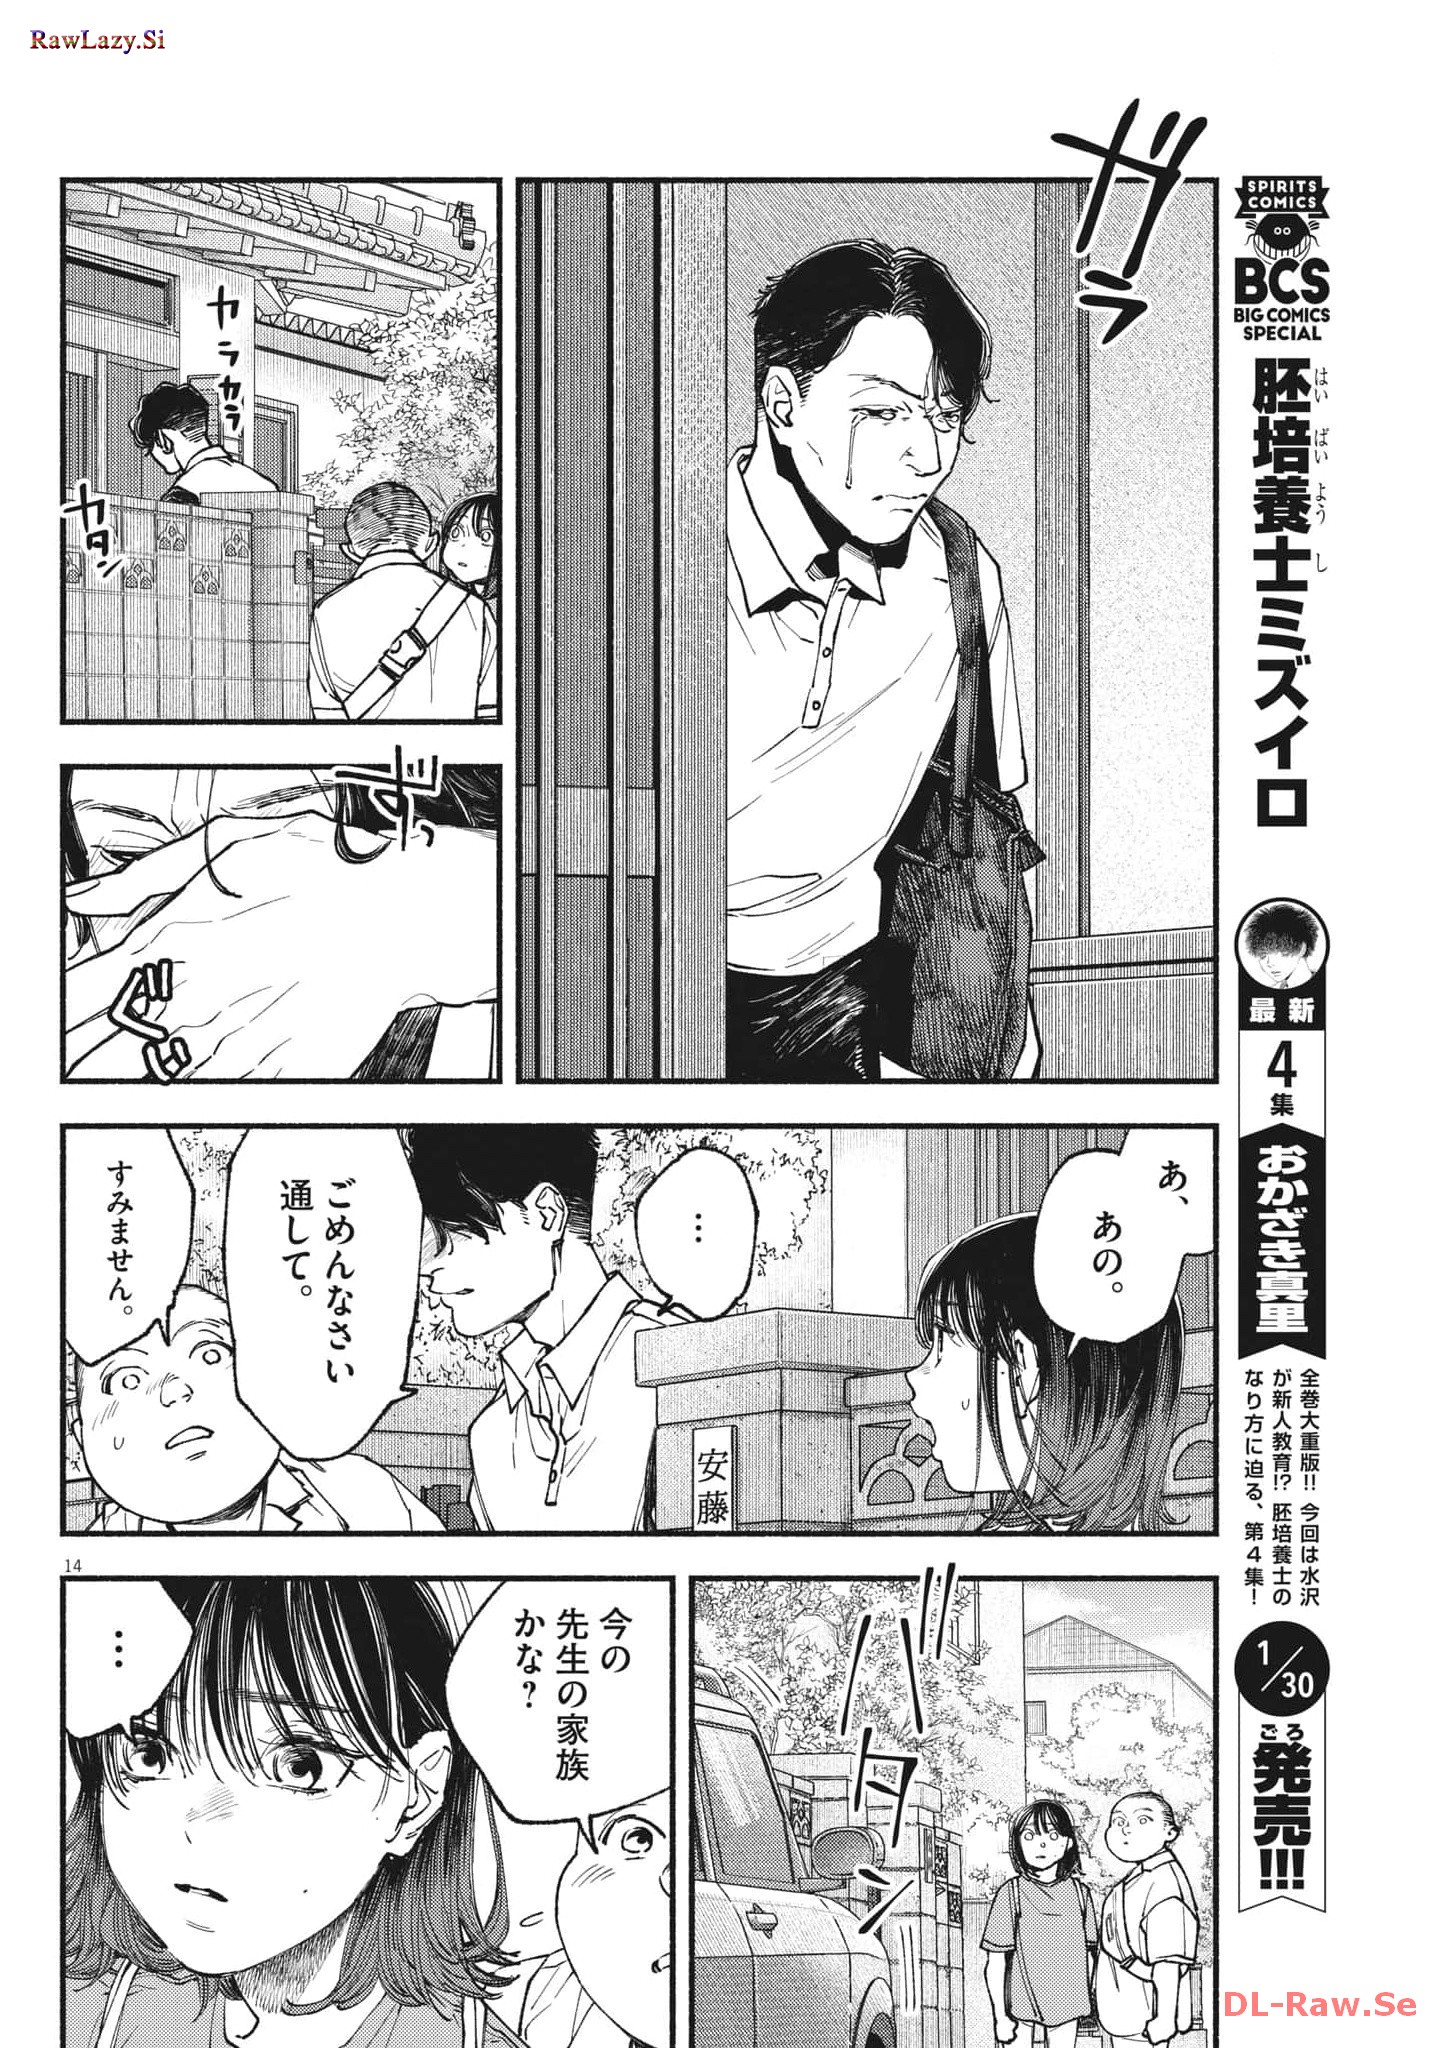 Konoyo wa Tatakau Kachi ga Aru  - Chapter 16 - Page 14